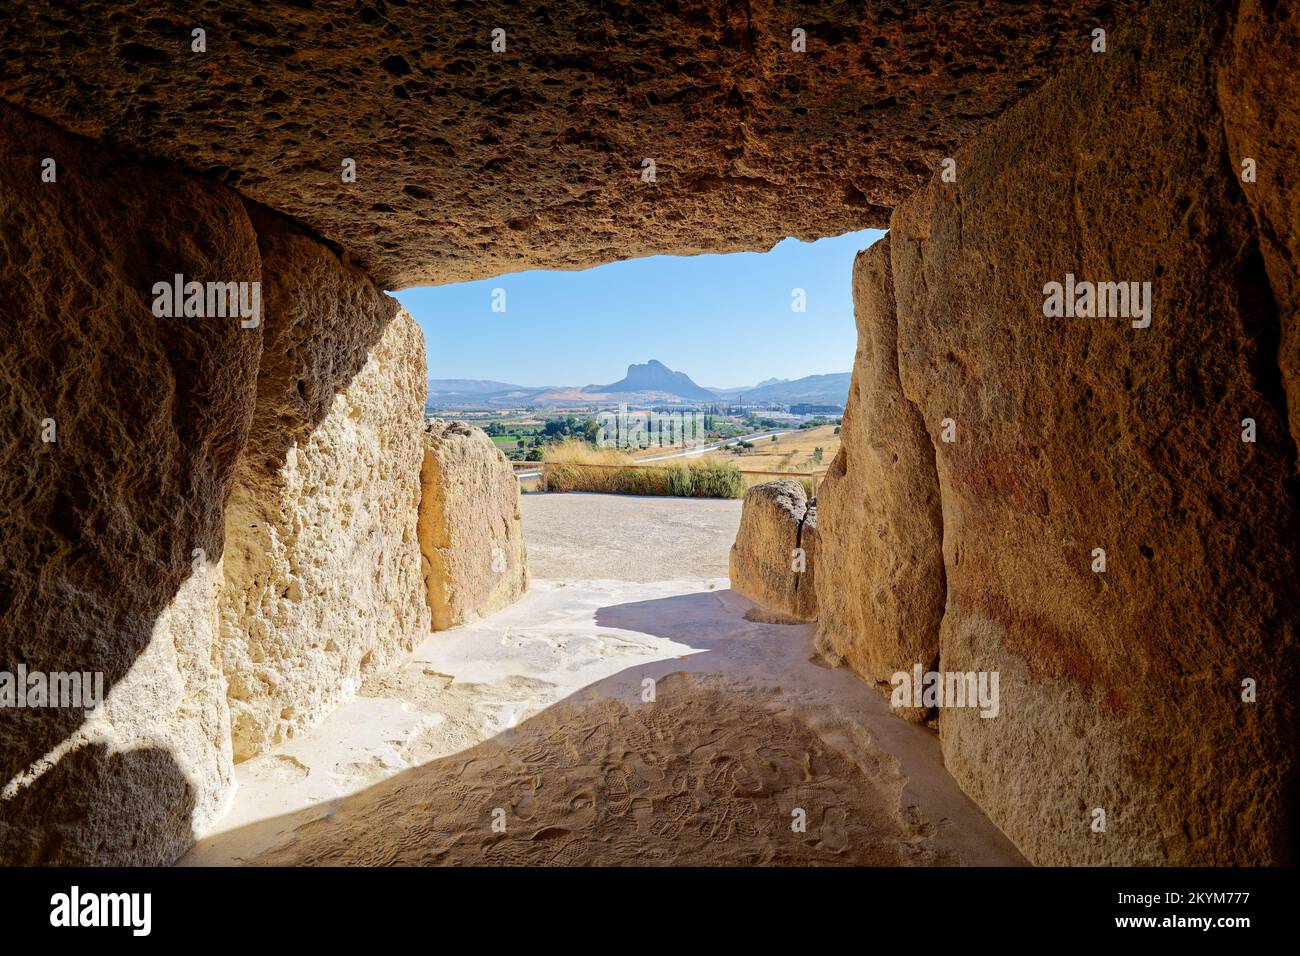 All'interno del monumento megalitico Dolmen in Antequera con il monumento naturale gli amanti Rock sullo sfondo. Viaggio turistico in Spagna. Foto Stock